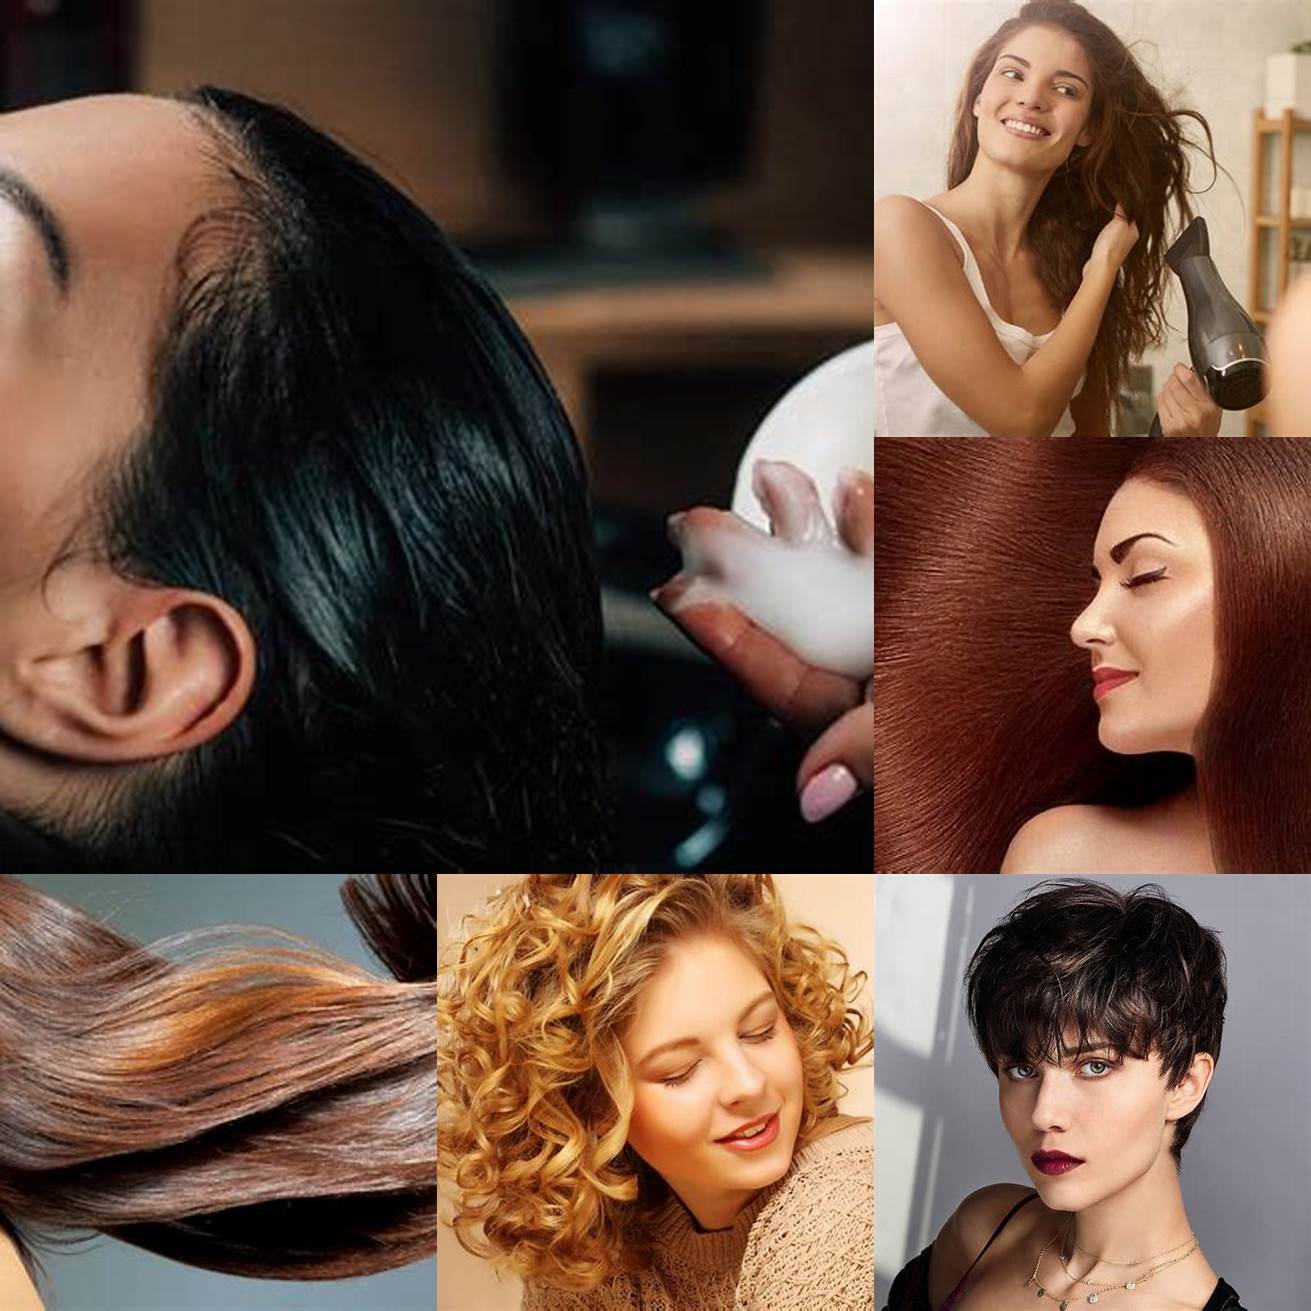 Prenez soin de vos cheveux Les cheveux courts ont besoin de soins particuliers pour rester en bonne santé et brillants Assurez-vous de les laver régulièrement et dutiliser des produits capillaires de qualité